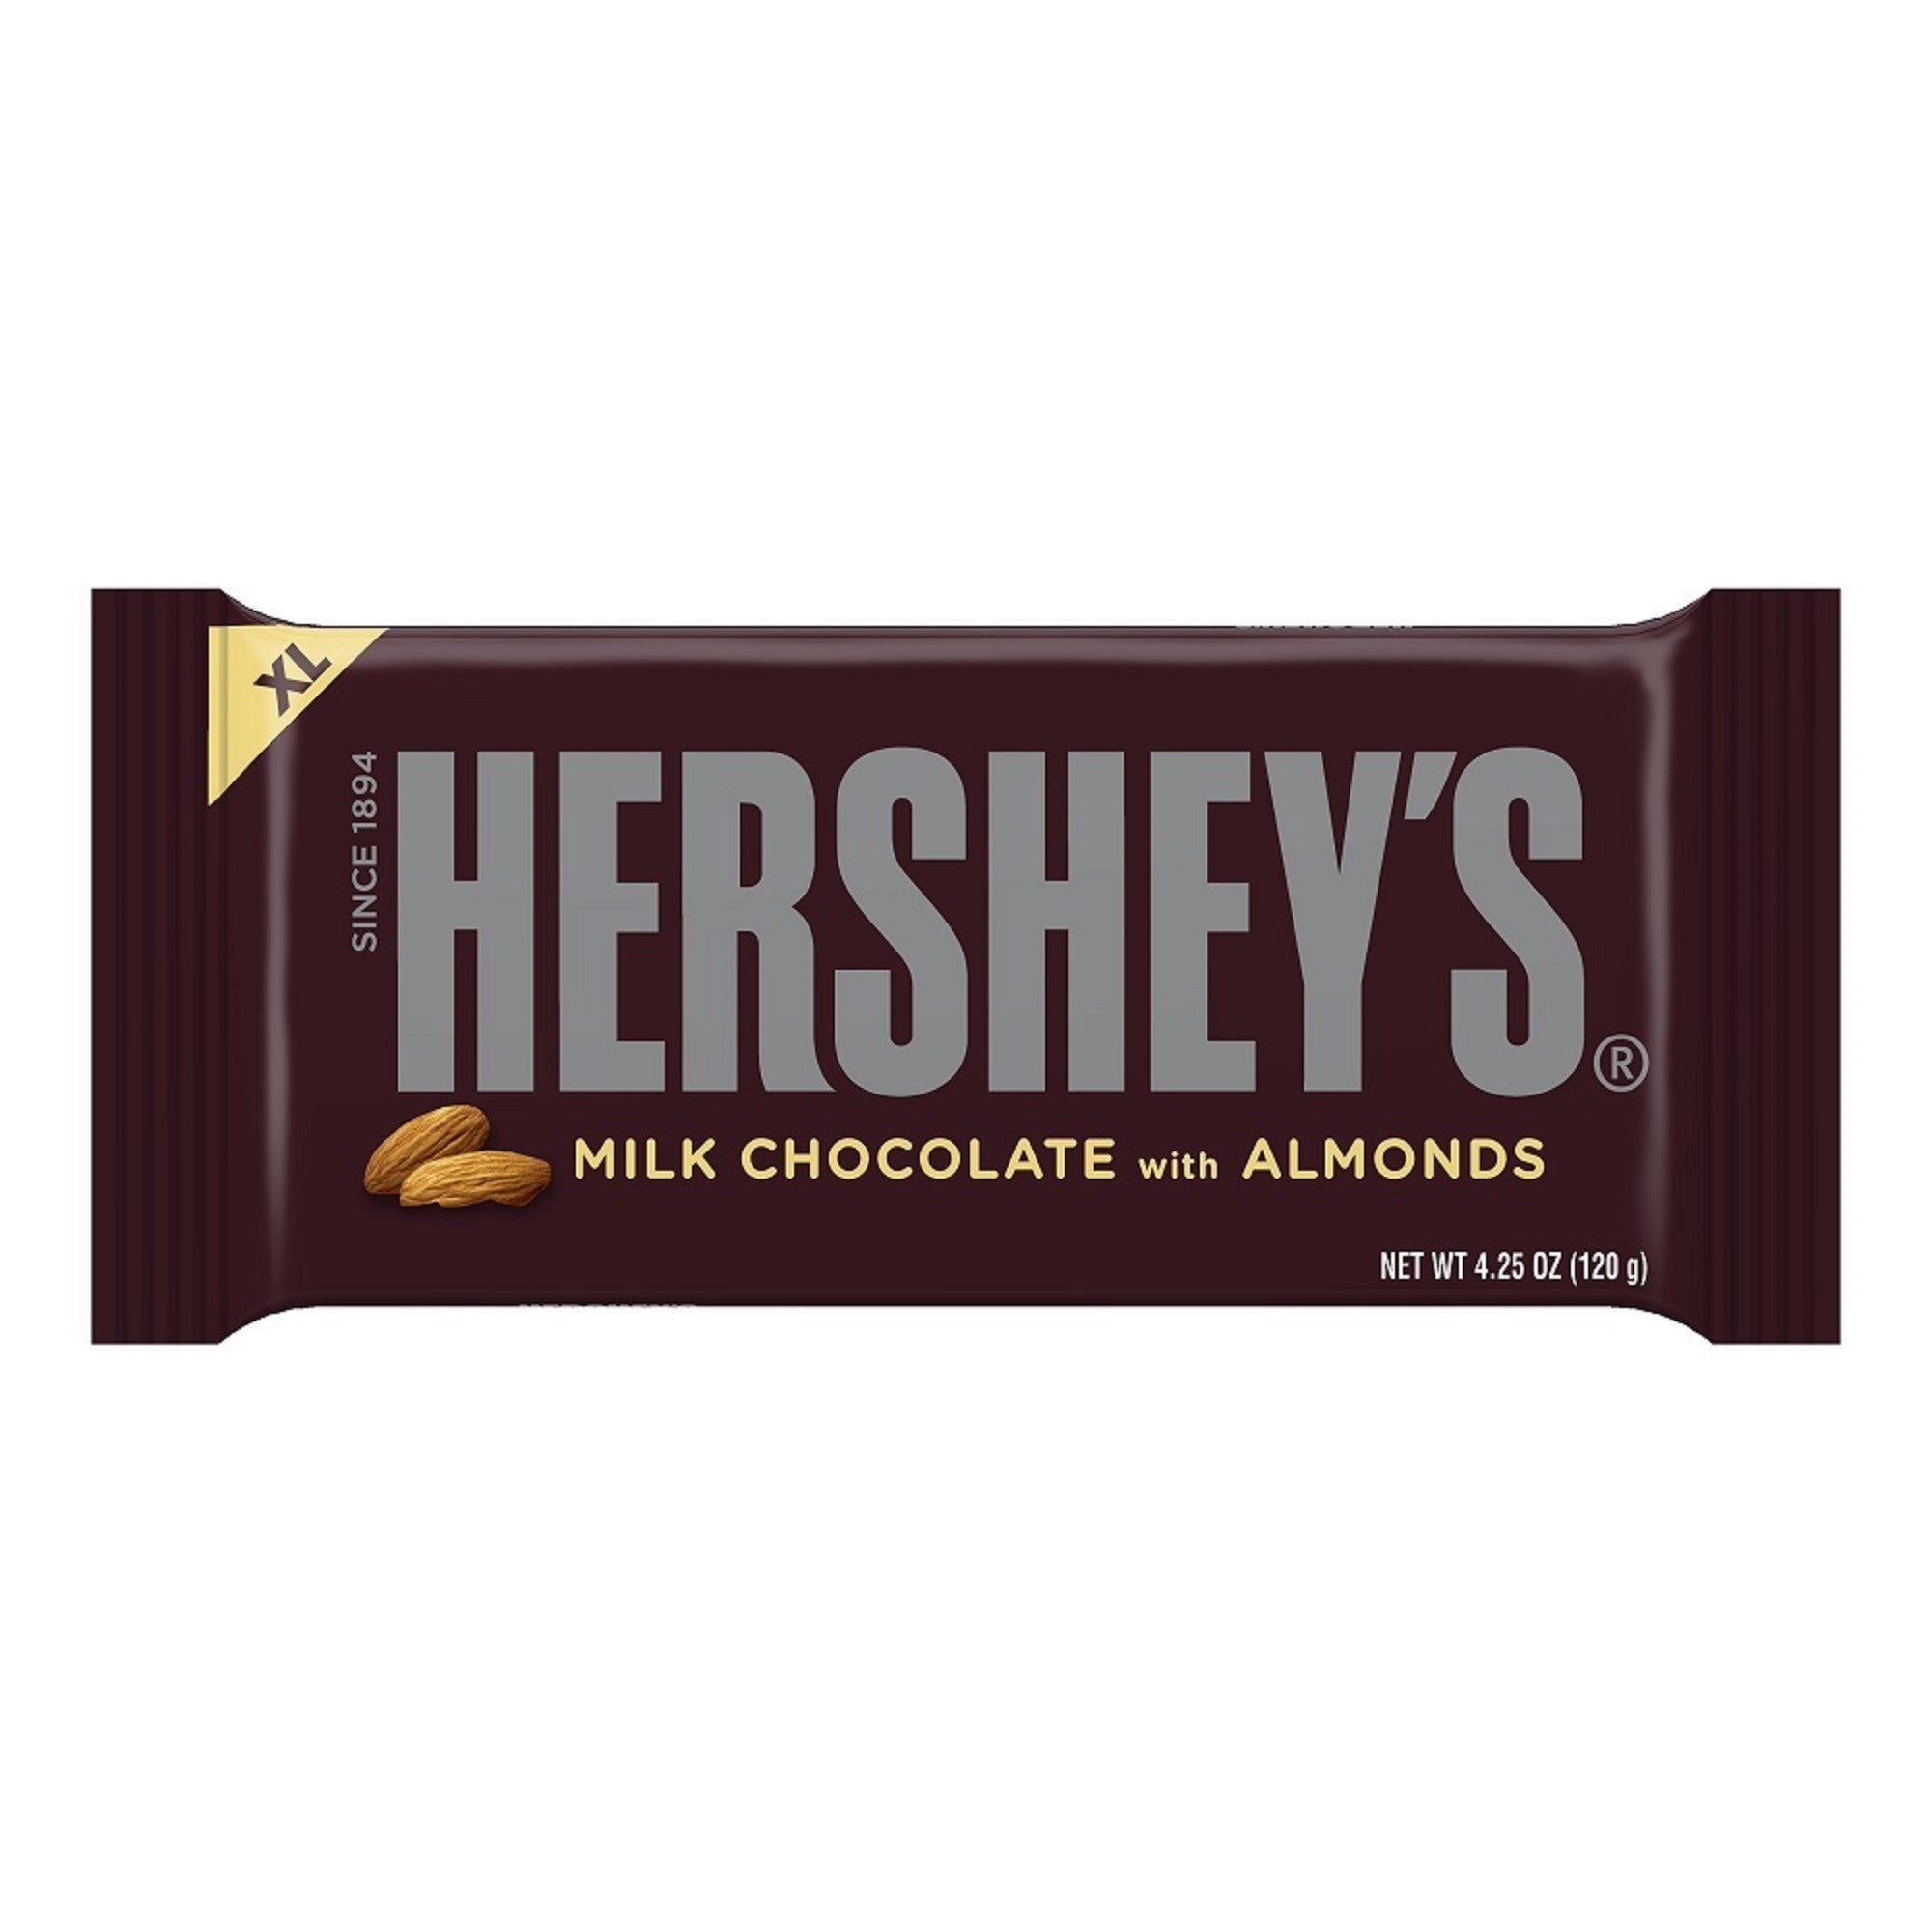 Hershey's Milk Chocolate with Almonds XL Candy Bar, 4.25oz